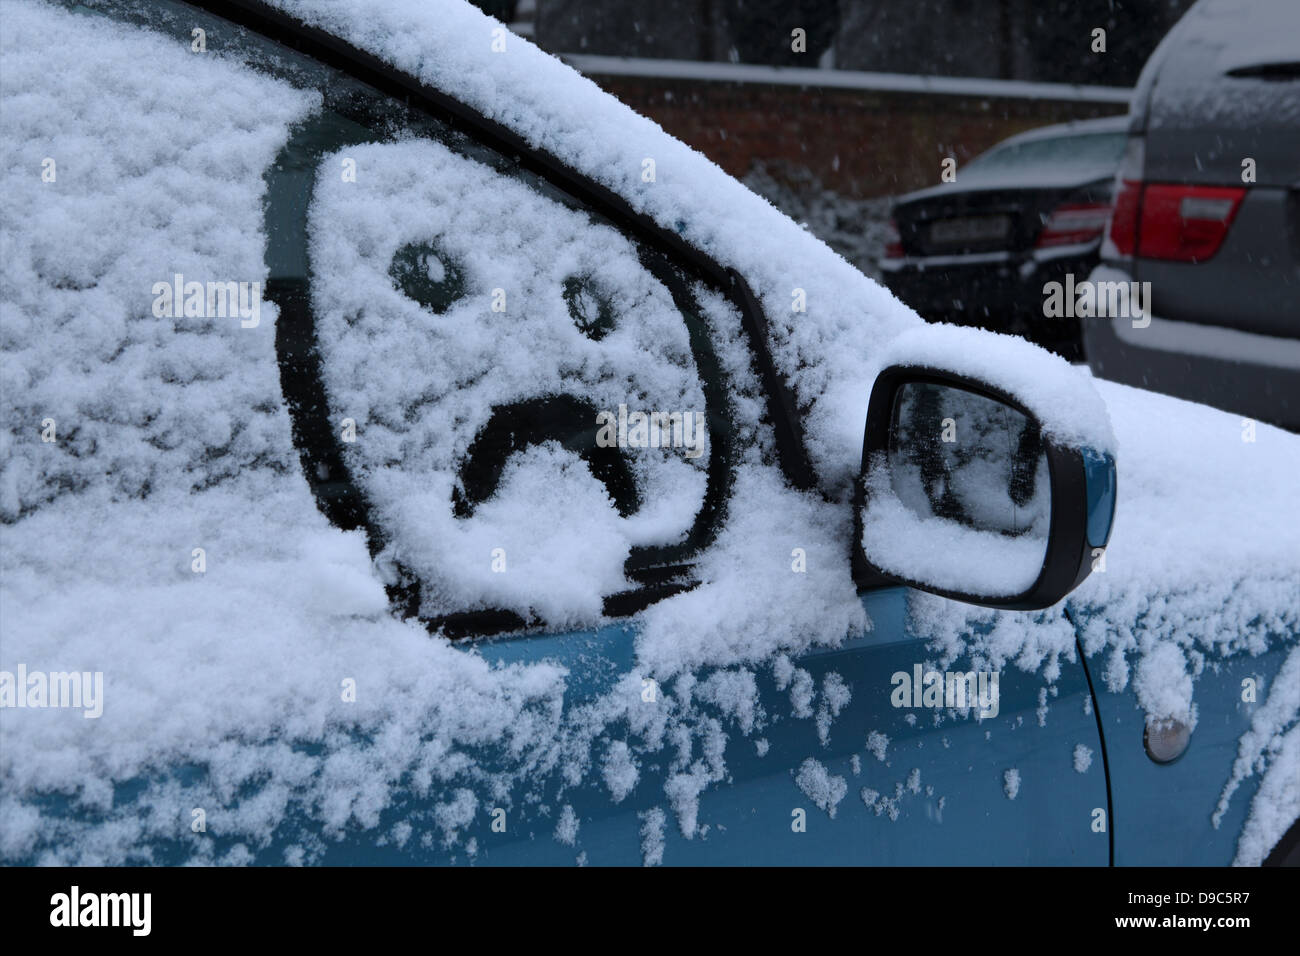 Visage triste dessiné dans la neige sur le pare-brise de voiture Banque D'Images